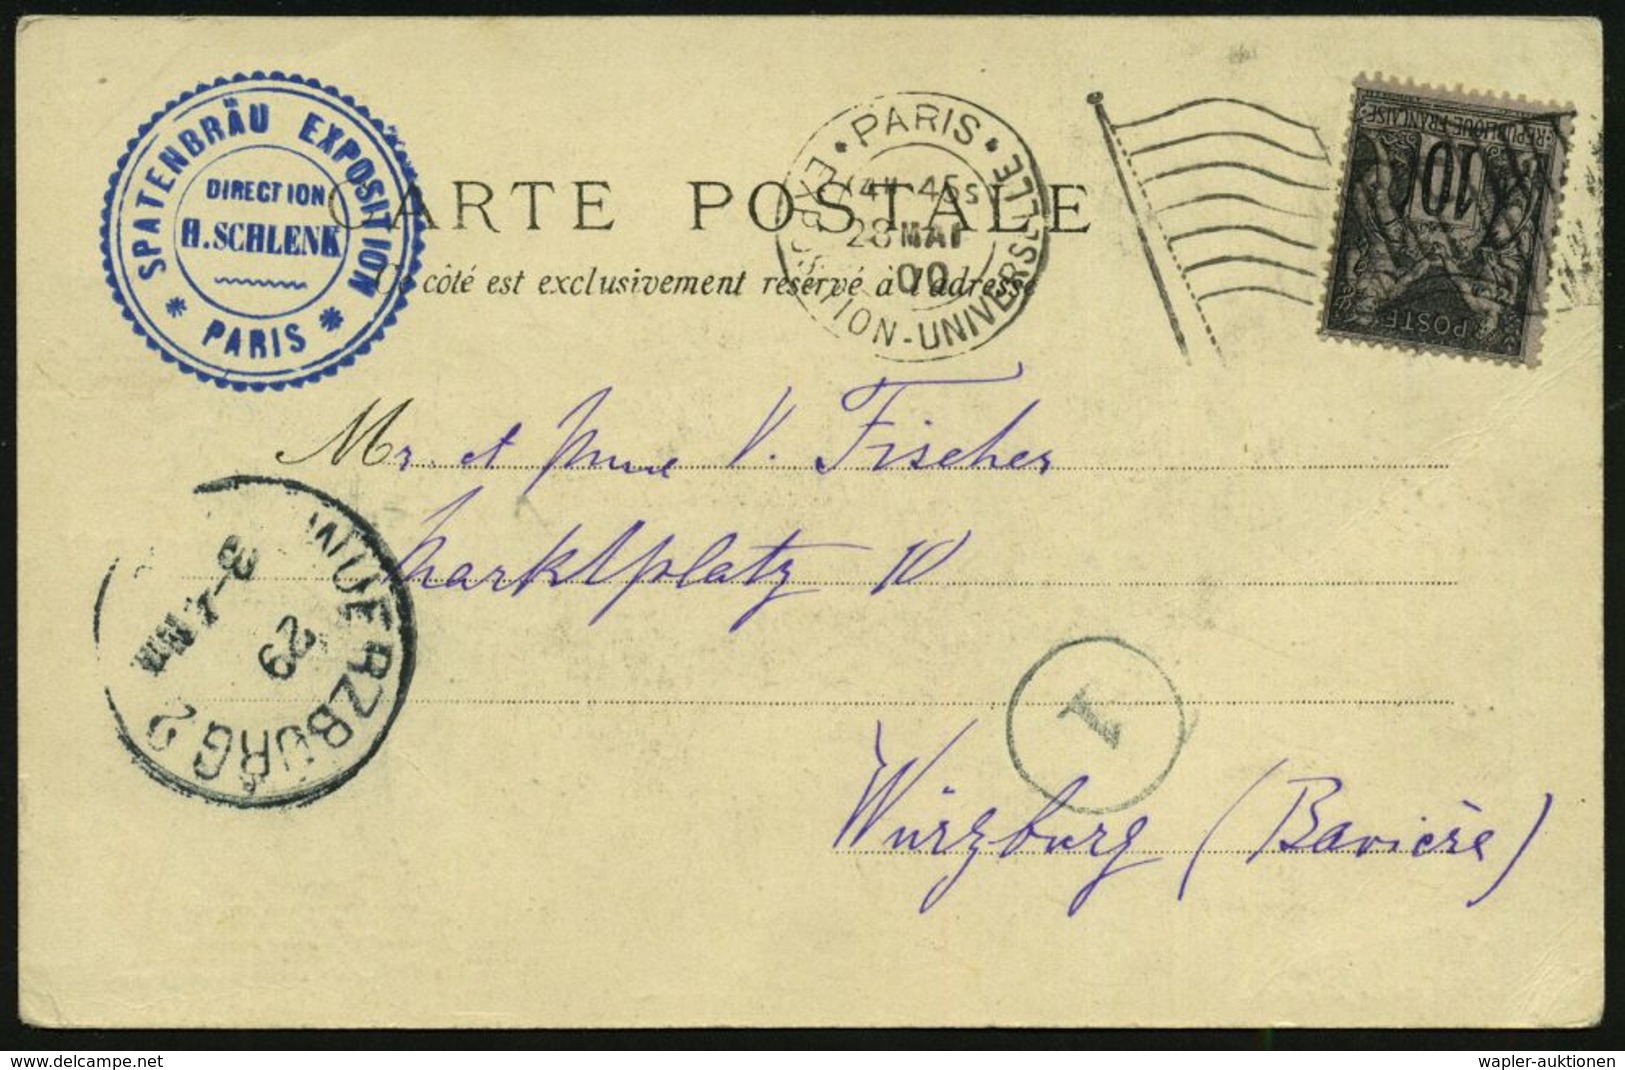 FRANKREICH 1900 (28.5.) MaFlaggensSt.: PARIS/EXPOSITION UNIVERSELLE/ R F (Flagge) + Bl. HdN: SPATENBRÄU EXPOSITION / PAR - Estate 1900: Parigi